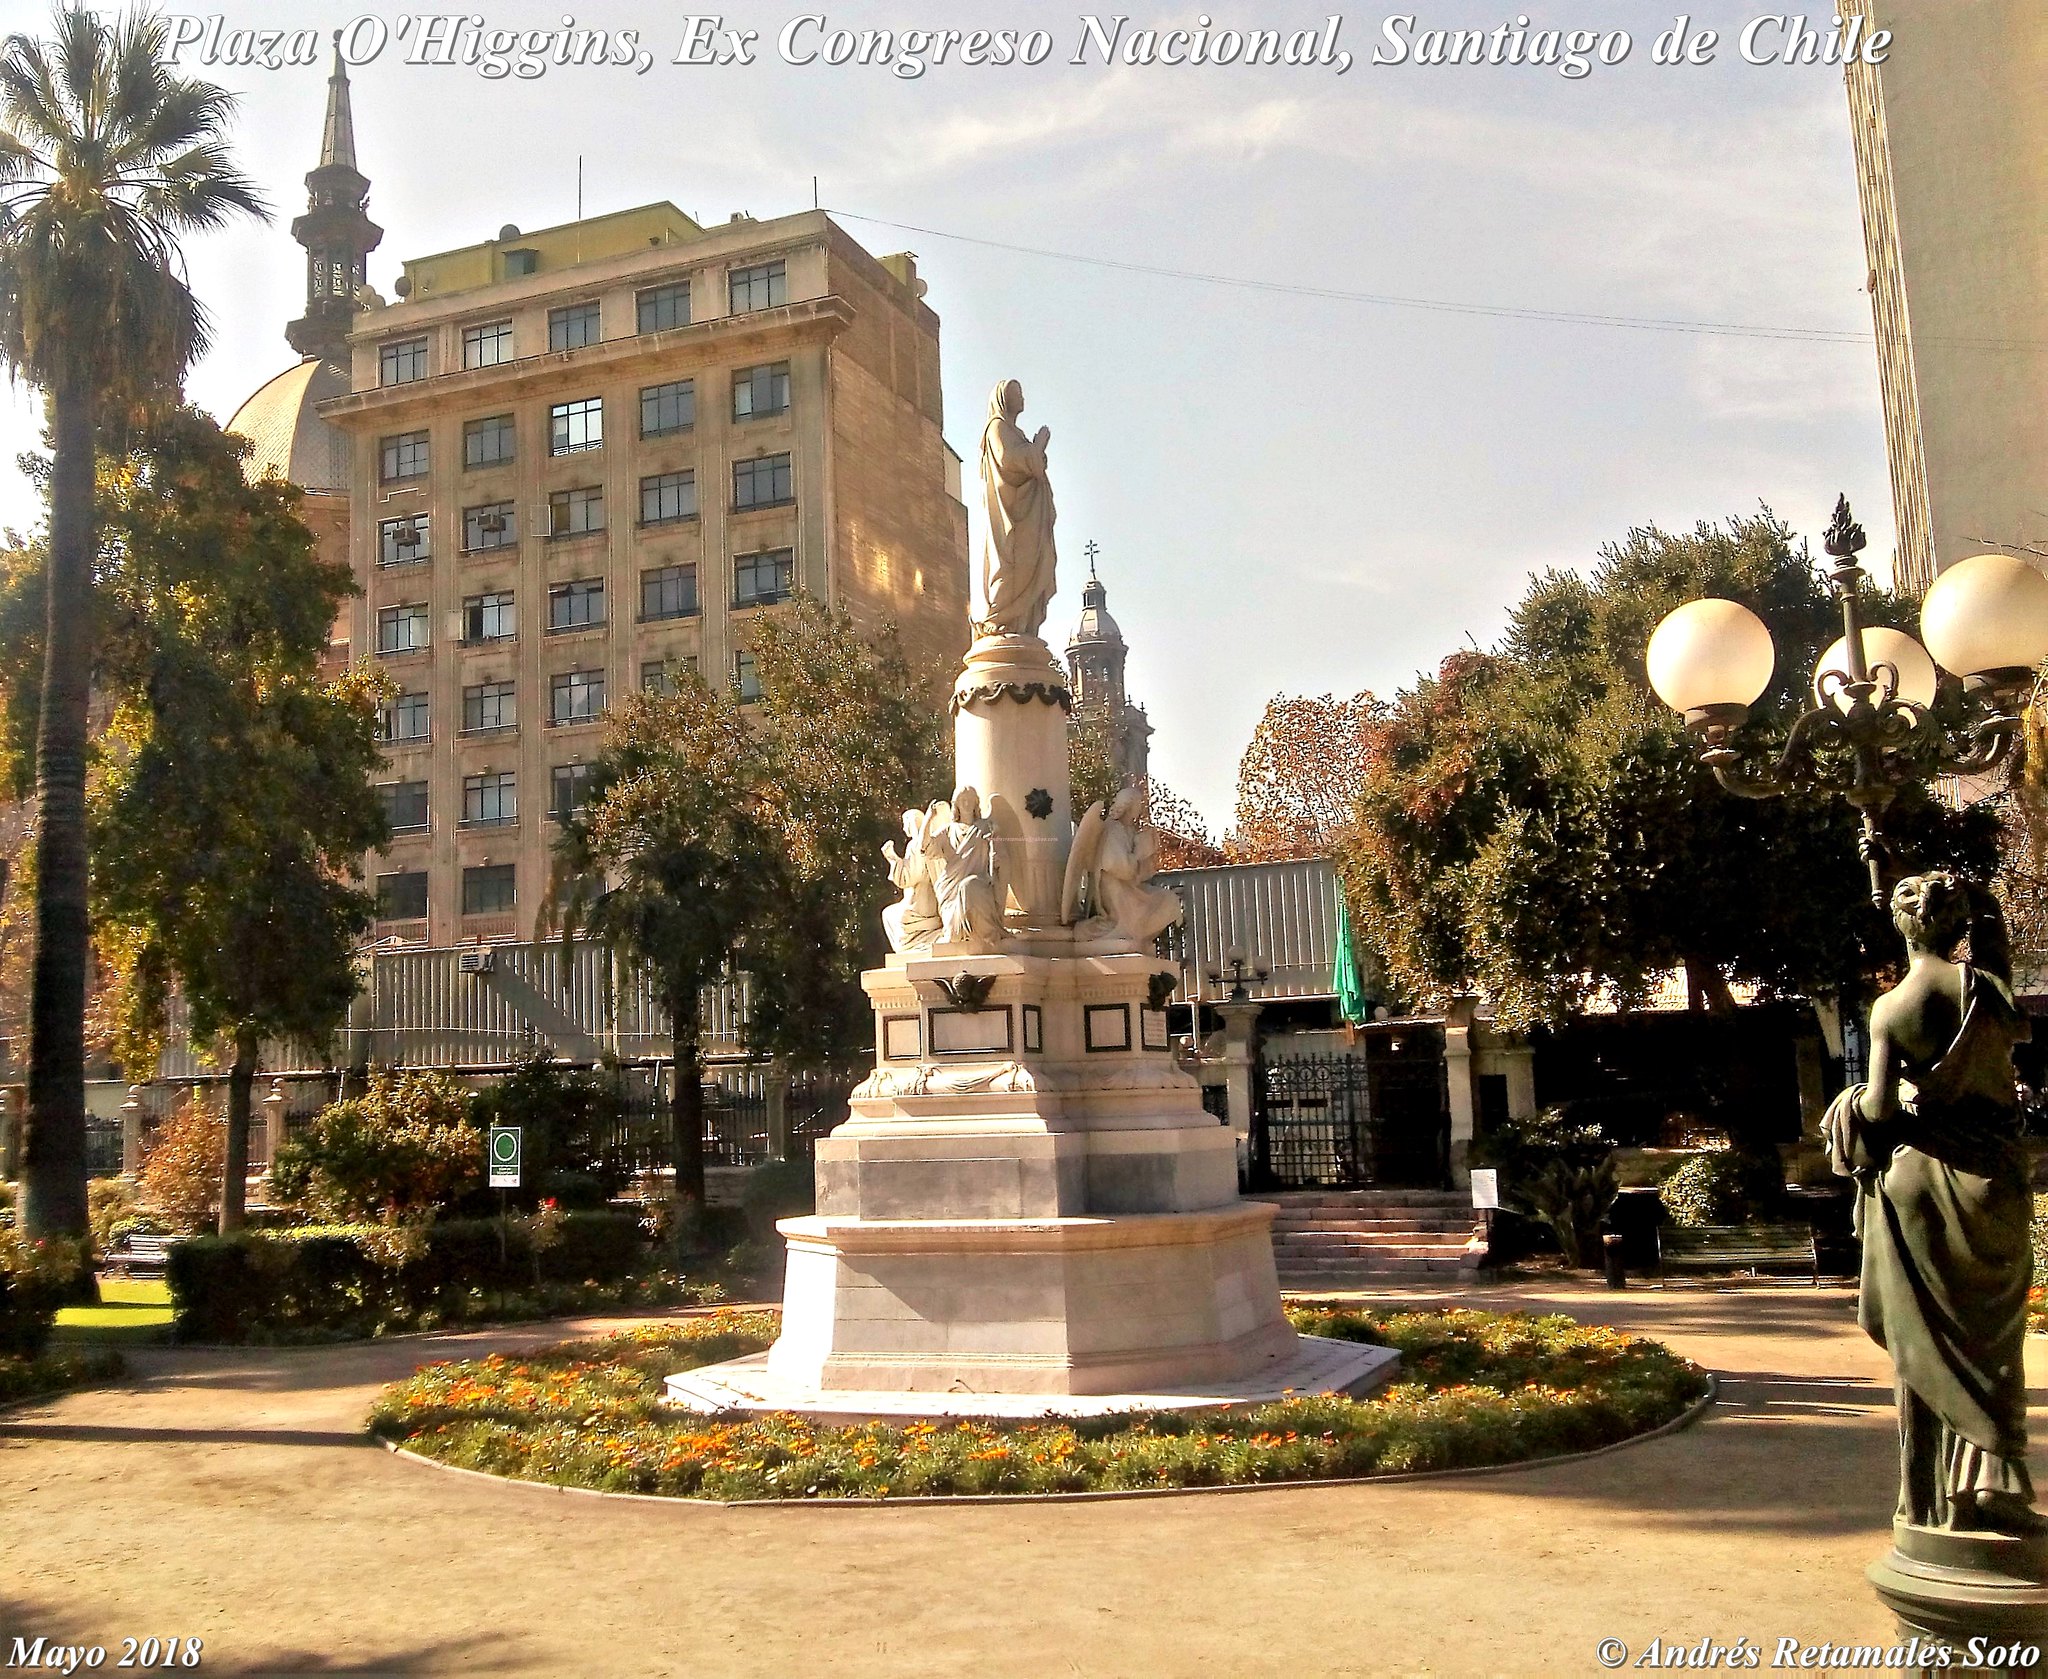 Monumento La Virgen Orante, Plaza O'Higgins, Jardines del Ex Congreso Nacional, Santiago de Chile, mayo 2018